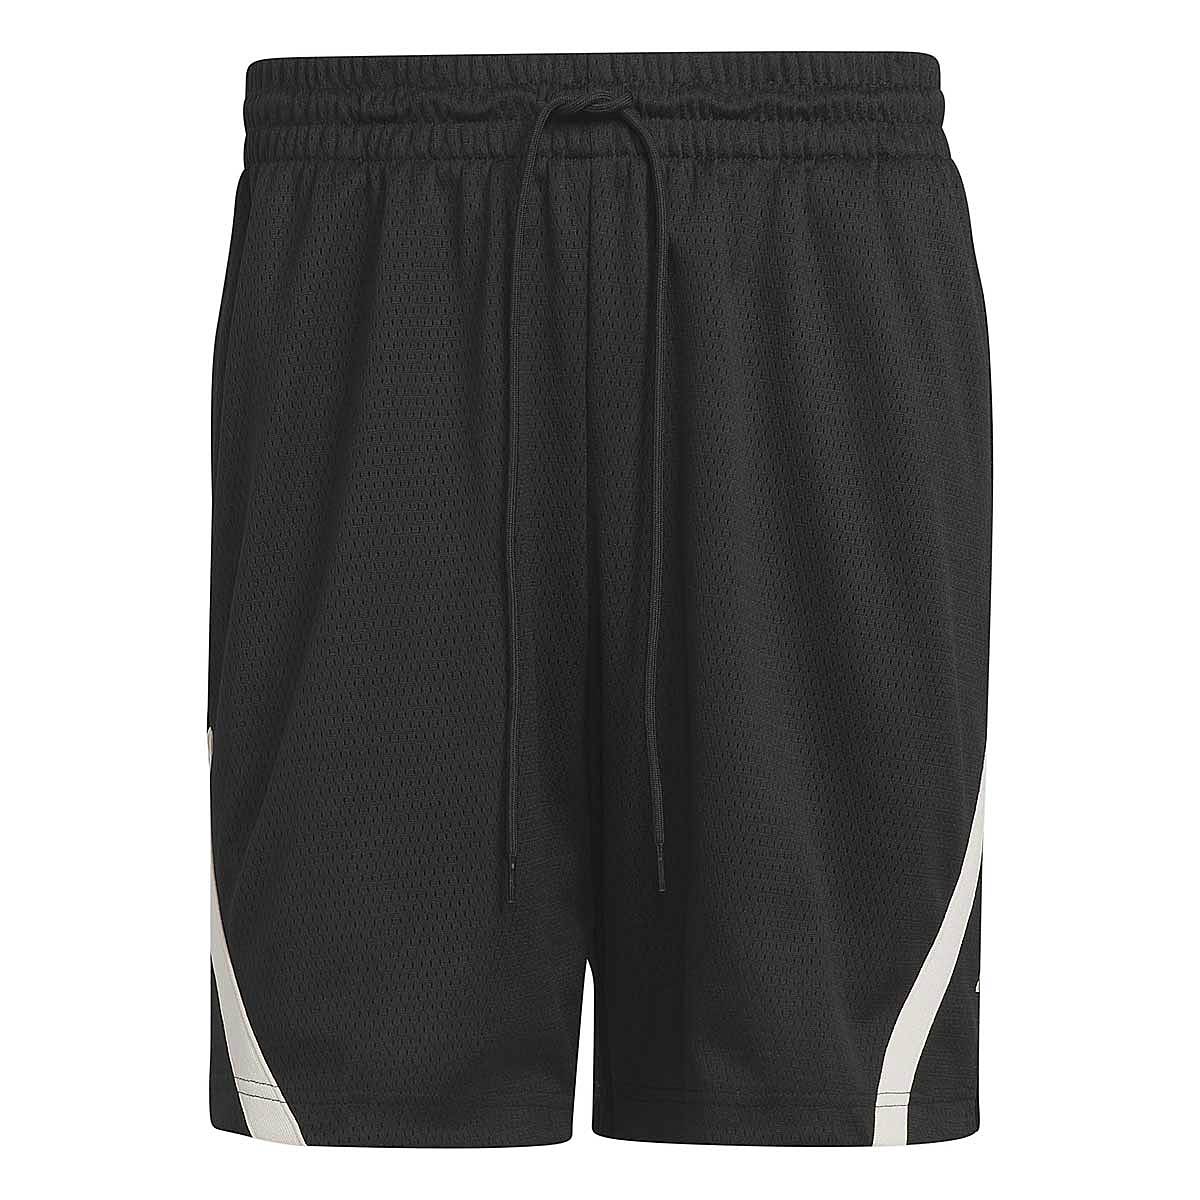 Image of Adidas Select Basketball Shorts, Black/halivo